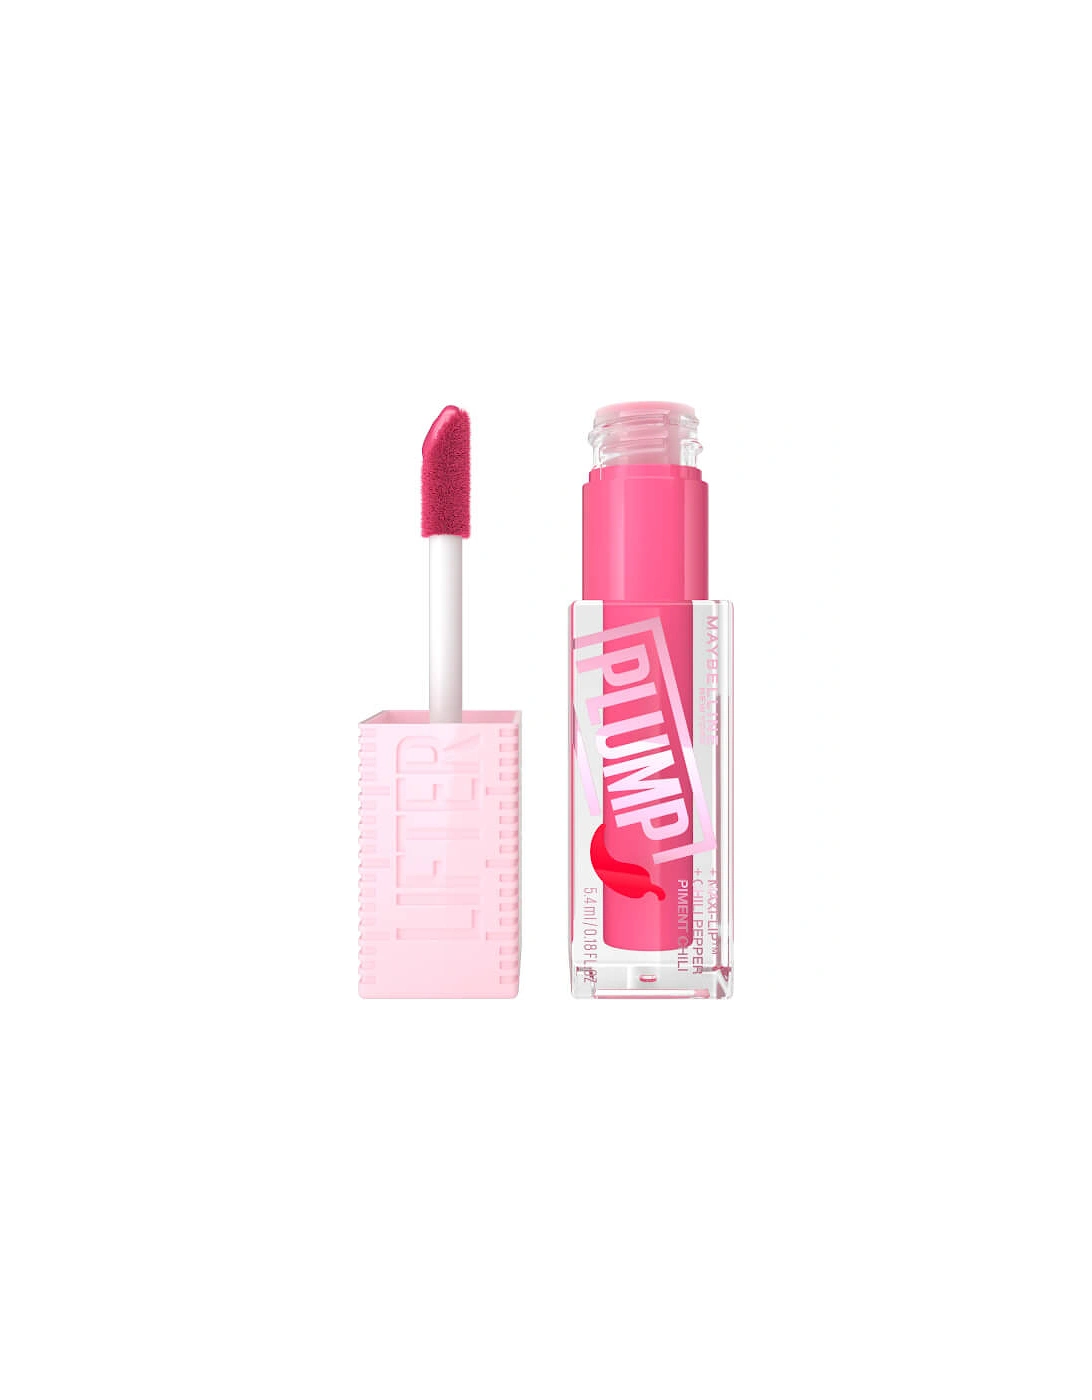 Lifter Gloss Plumping Lip Gloss - Pink Sting, 10 of 9